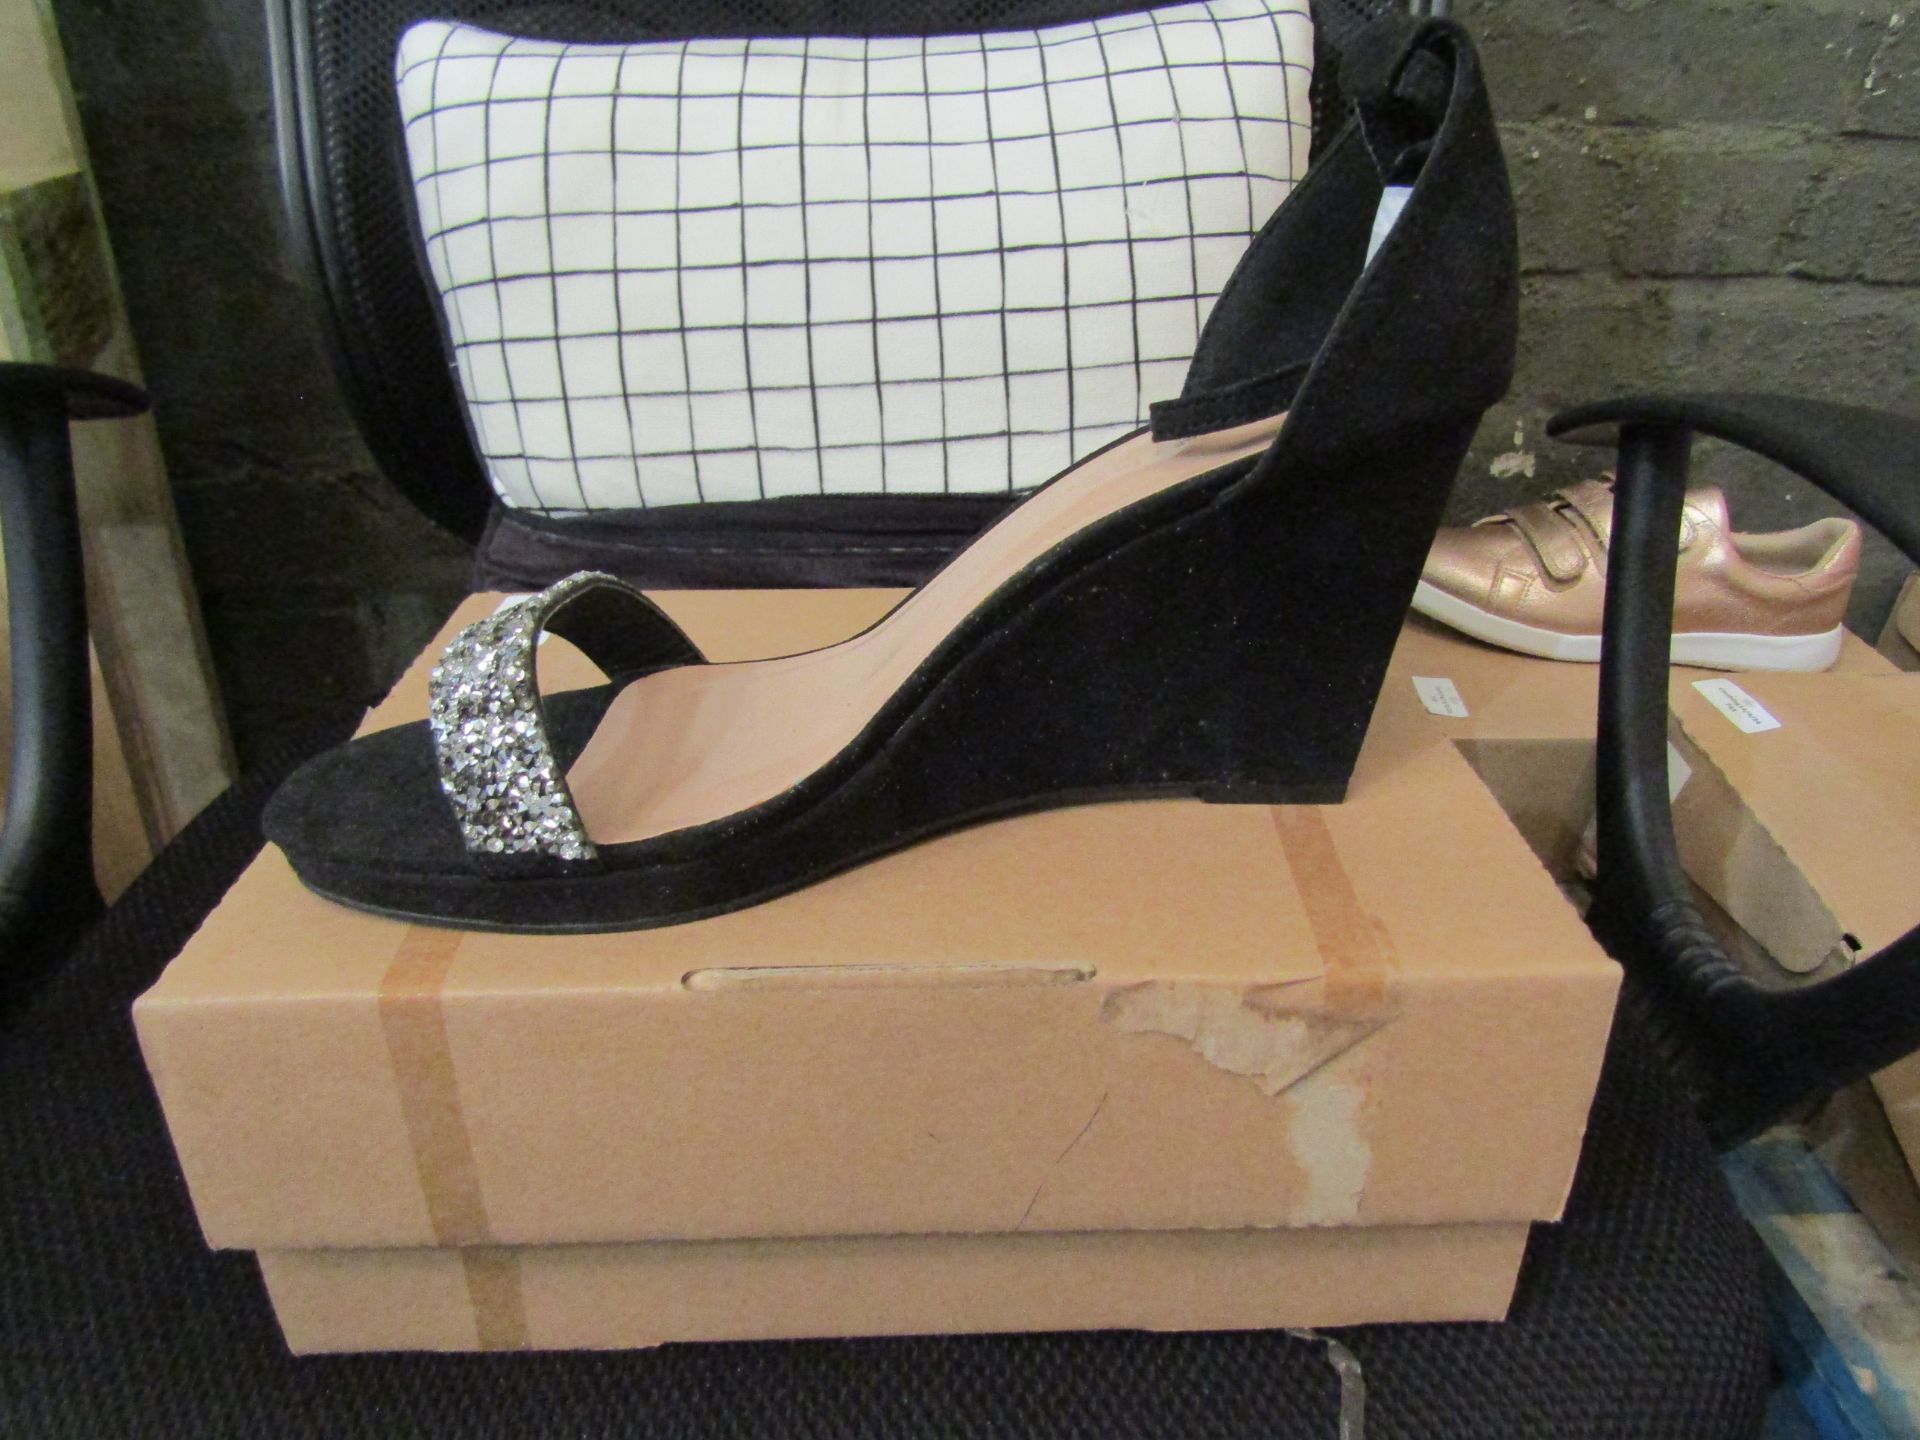 Ladies Heel Shoes, Size Uk 7, Black, Unworn & Boxed. See Image.